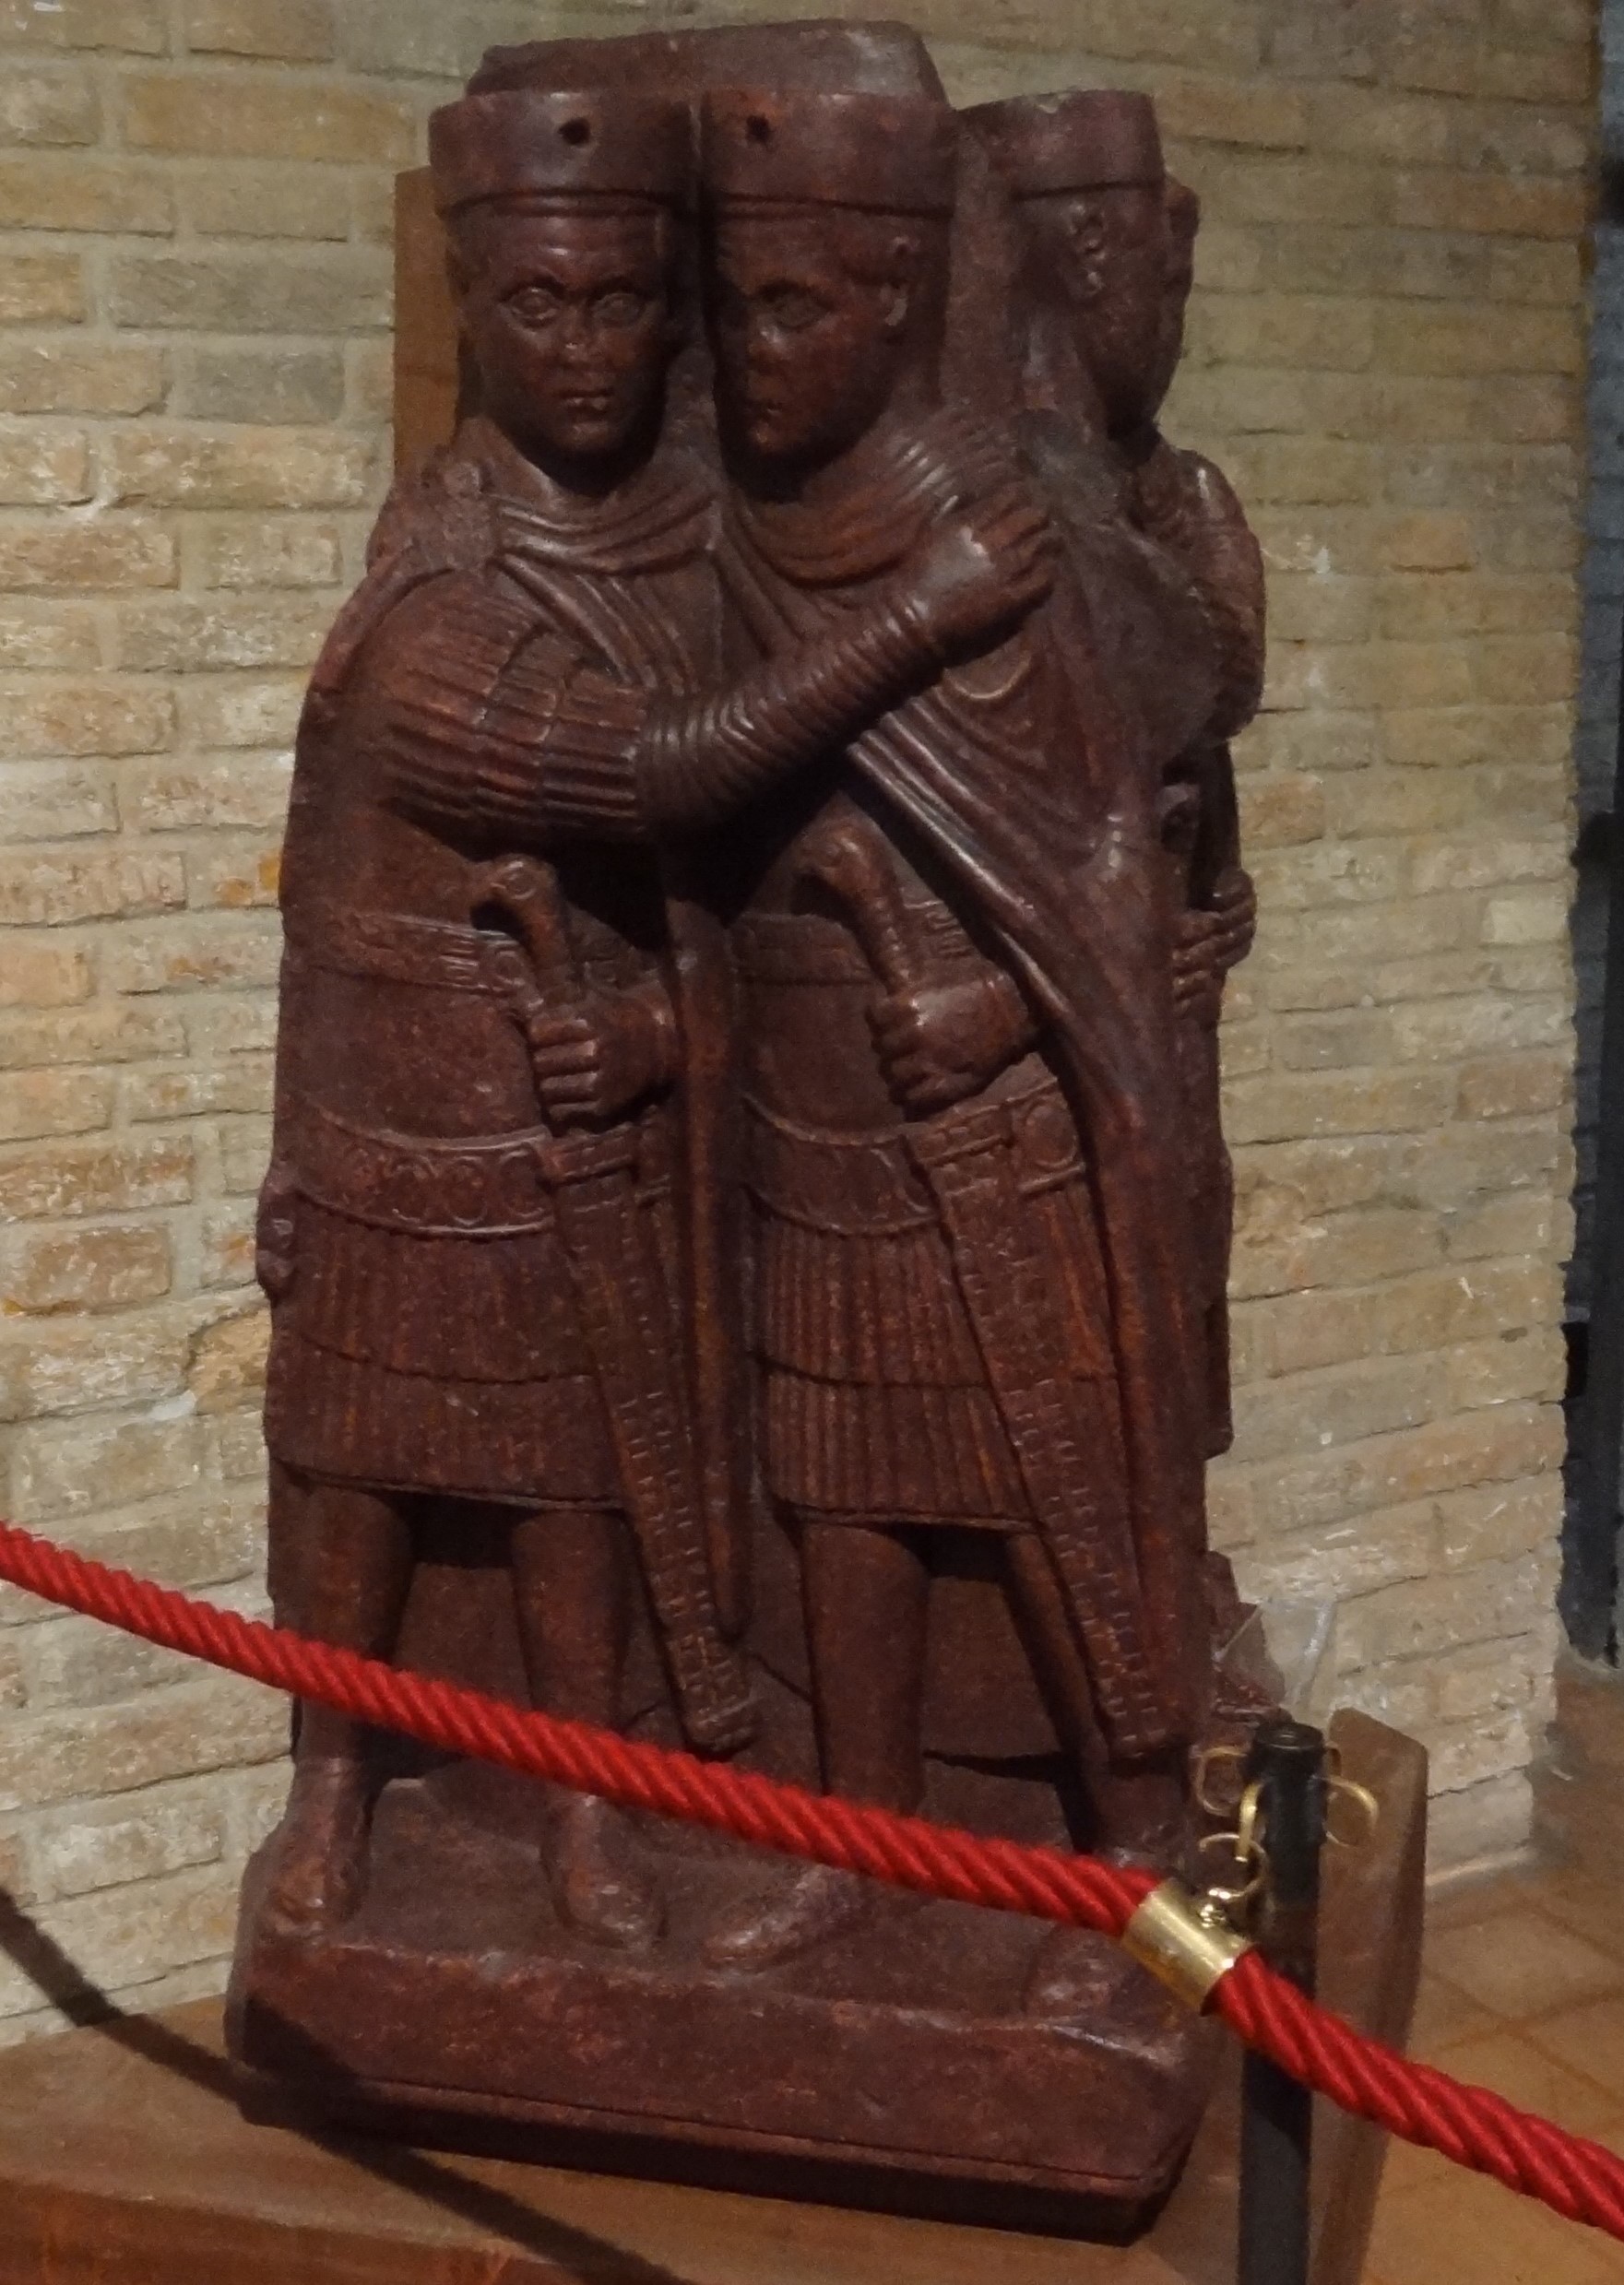 A Venise, une curieuse statue conduit à un moment crucial de l'histoire chrétienne